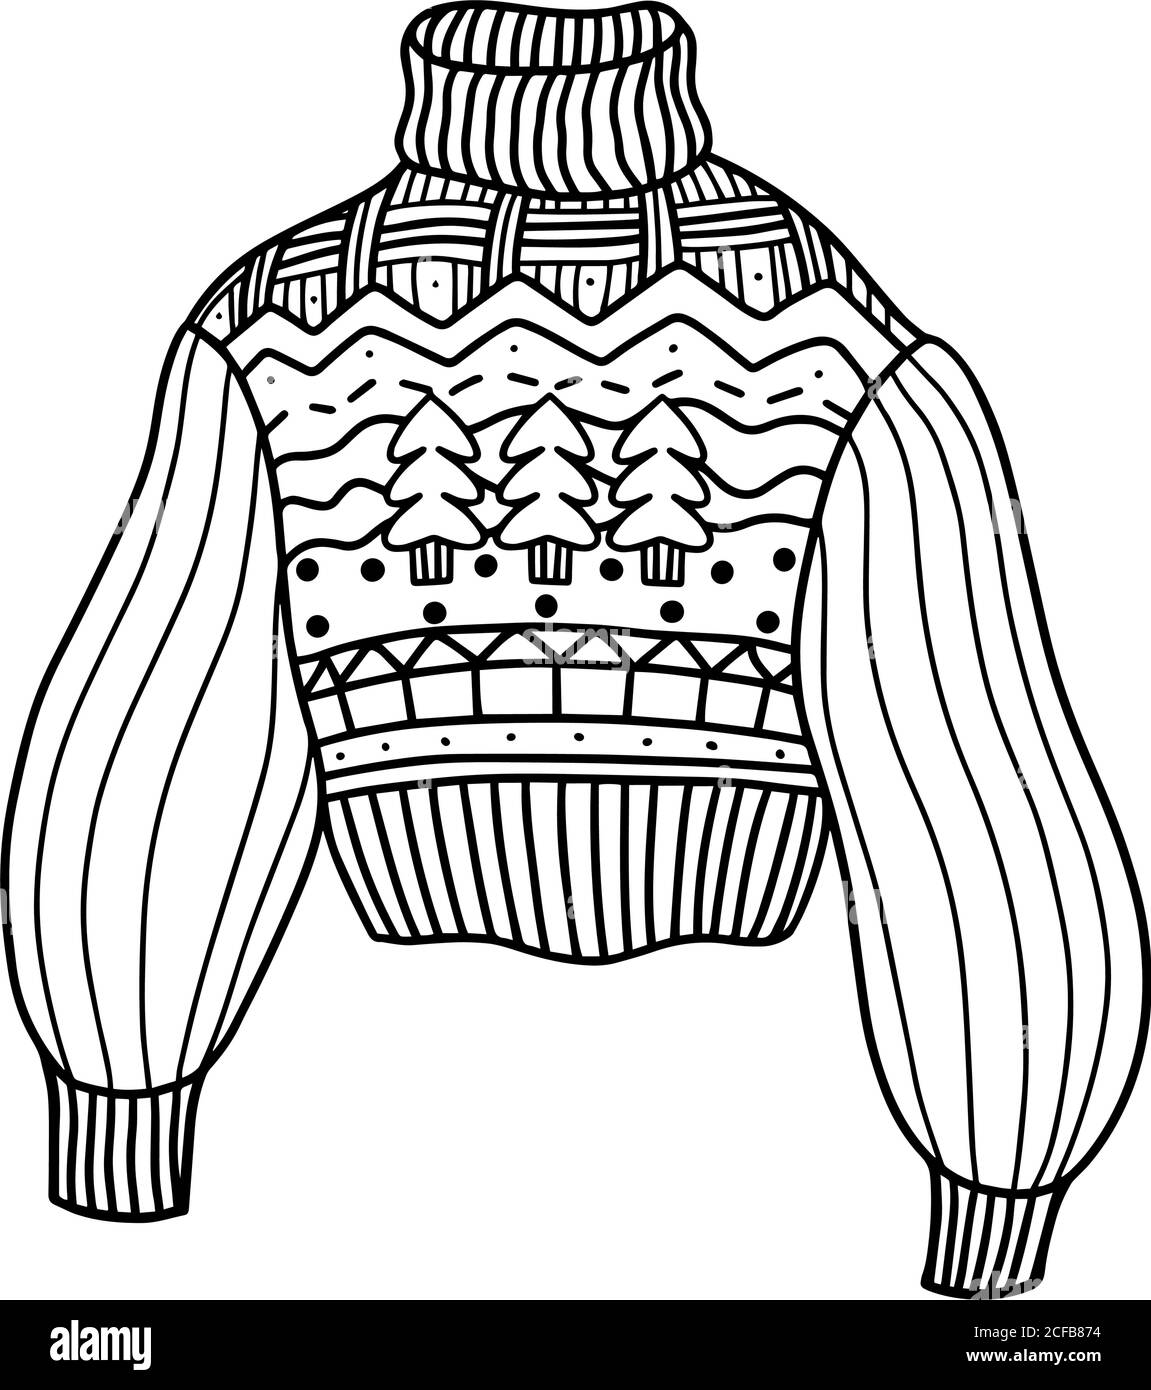 Pullover lavorato a maglia in lana con motivi natalizi, isolato su sfondo bianco. Maglione caldo e accogliente. Illustrazione vettoriale in stile Doodle Illustrazione Vettoriale